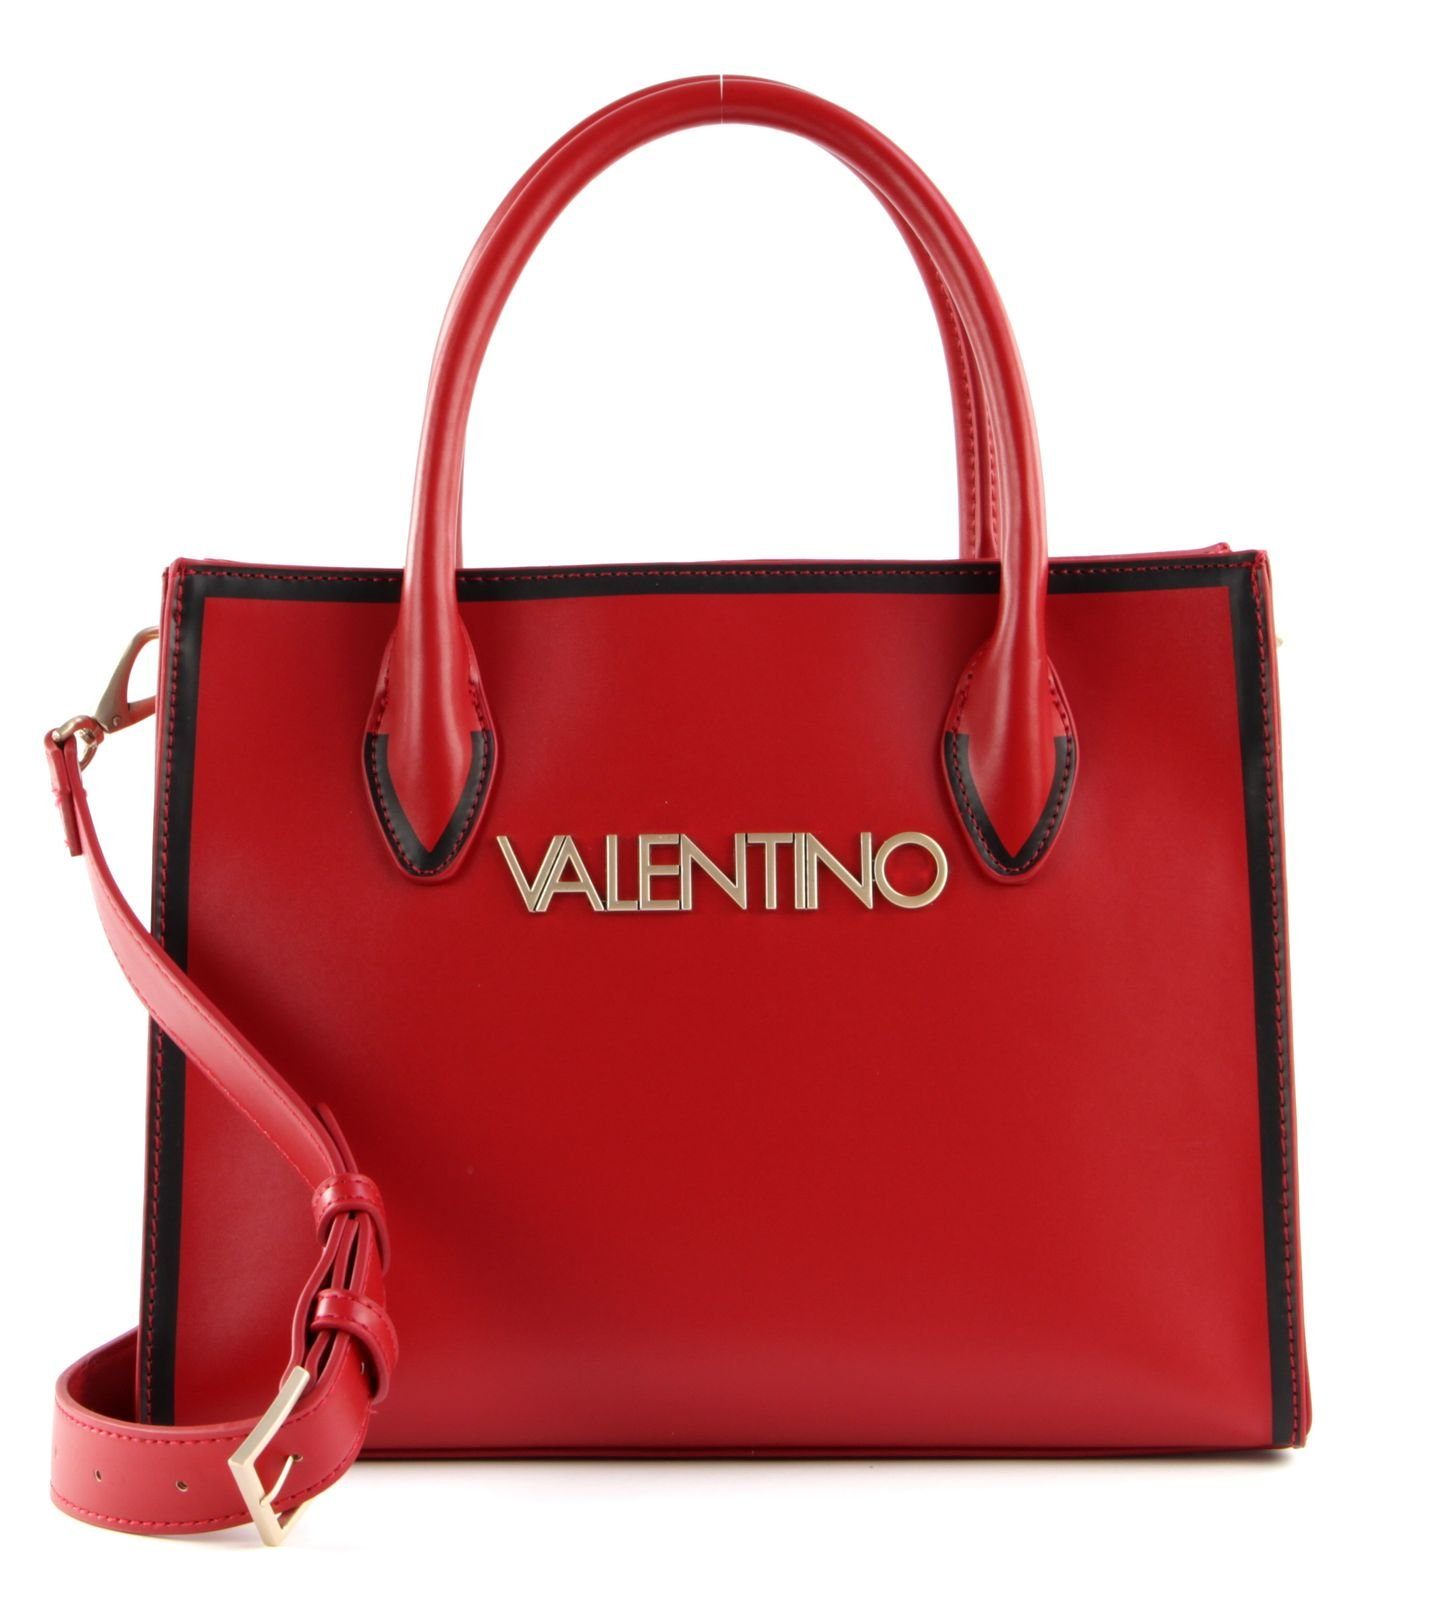 VALENTINO BAGS Handtasche »Mayor« online kaufen | OTTO